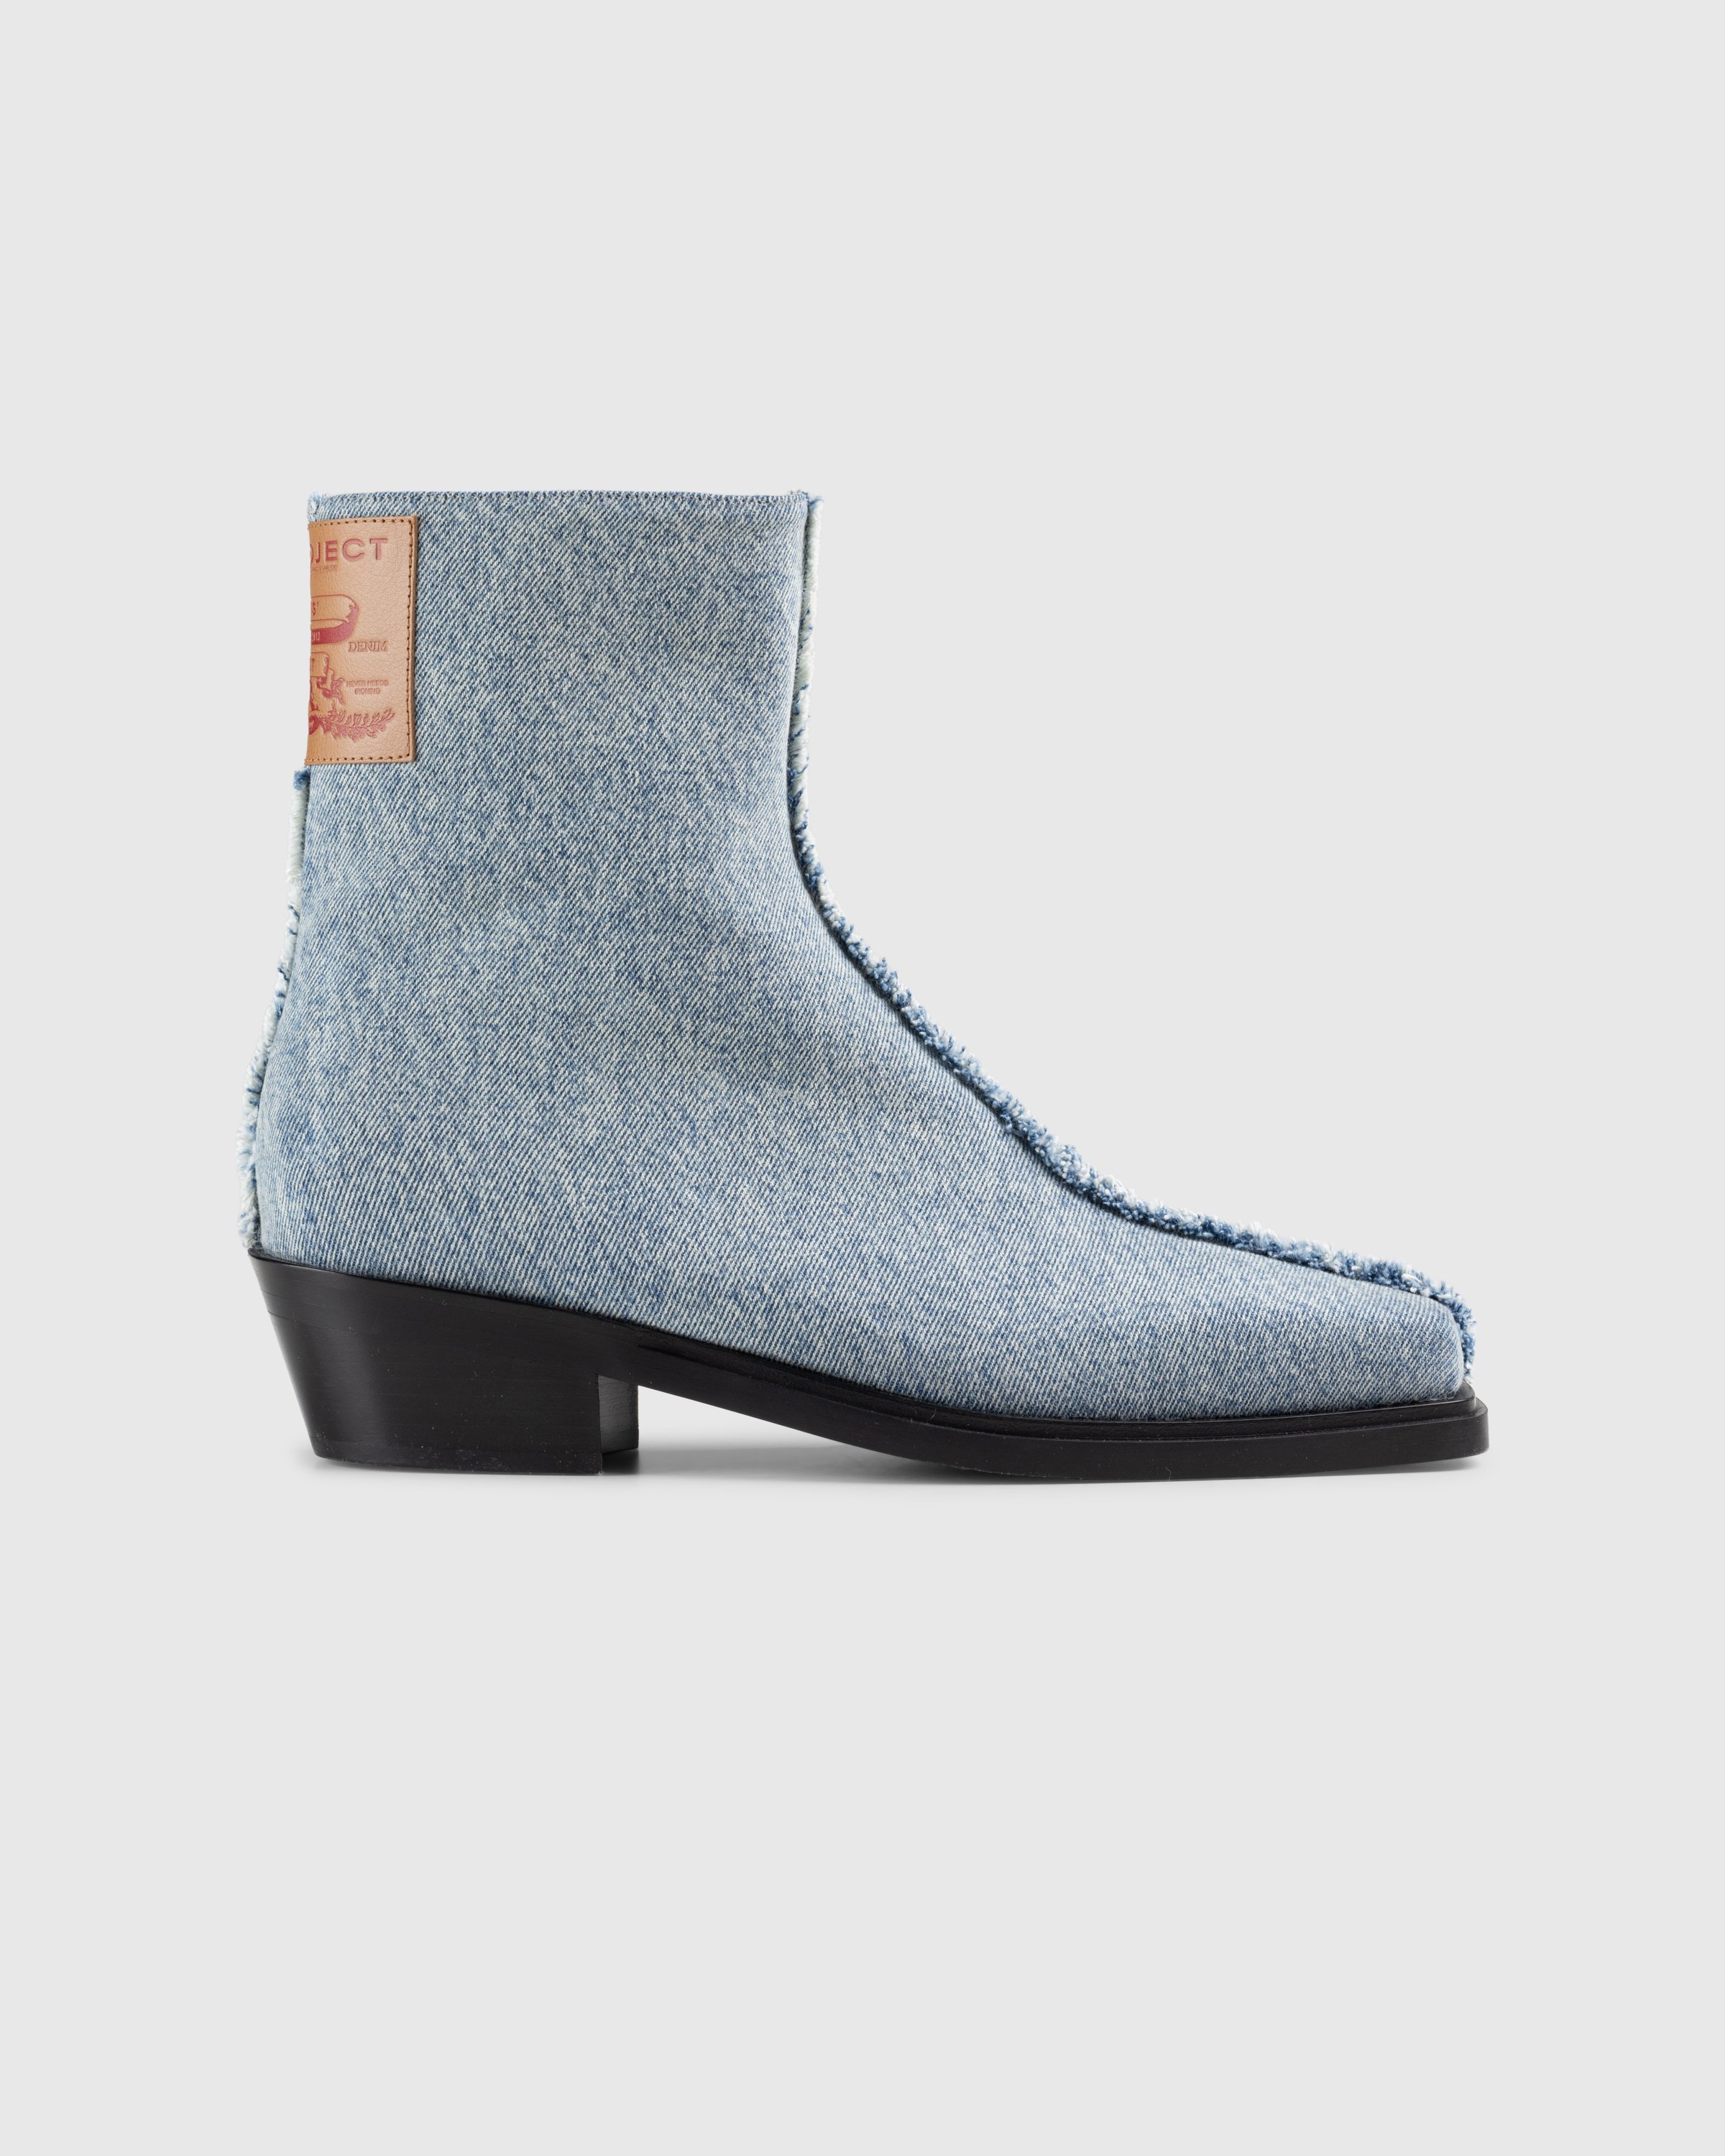 Y/Project - Paris’ Best Boots Vintage Ice Blue - Footwear - Blue - Image 1